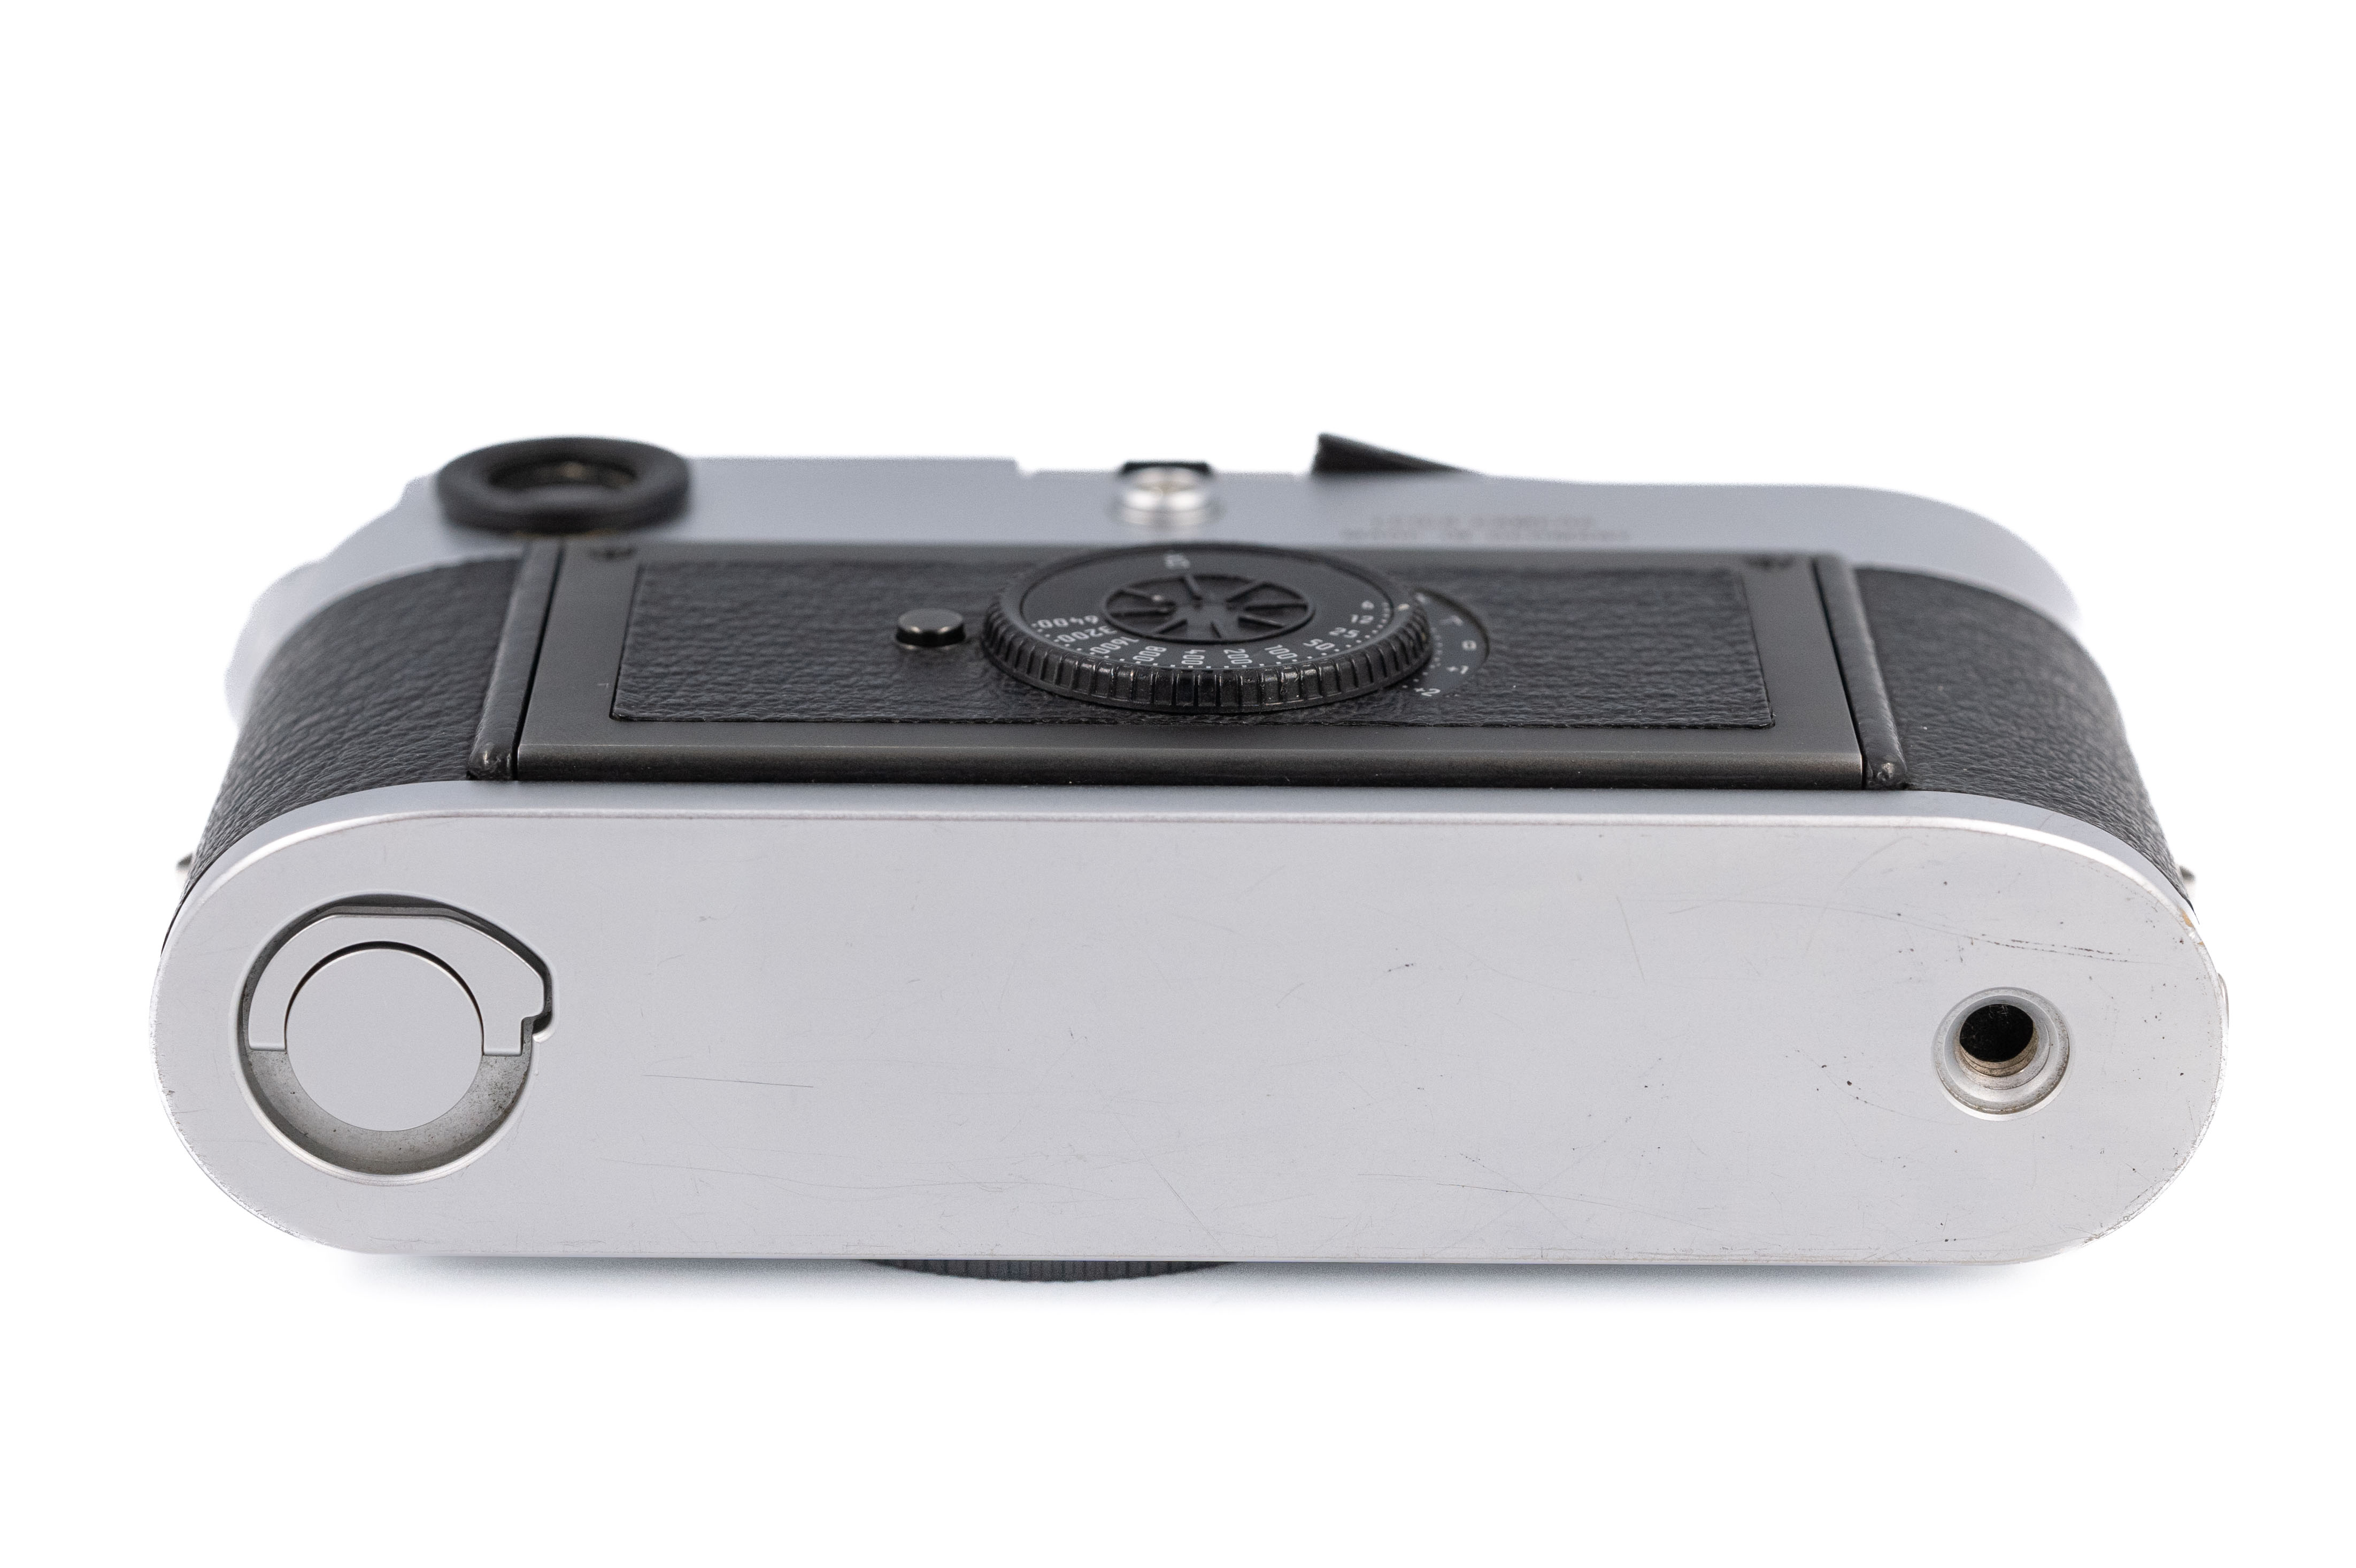 Leica M7 Silver Chrome 0.72x 10504